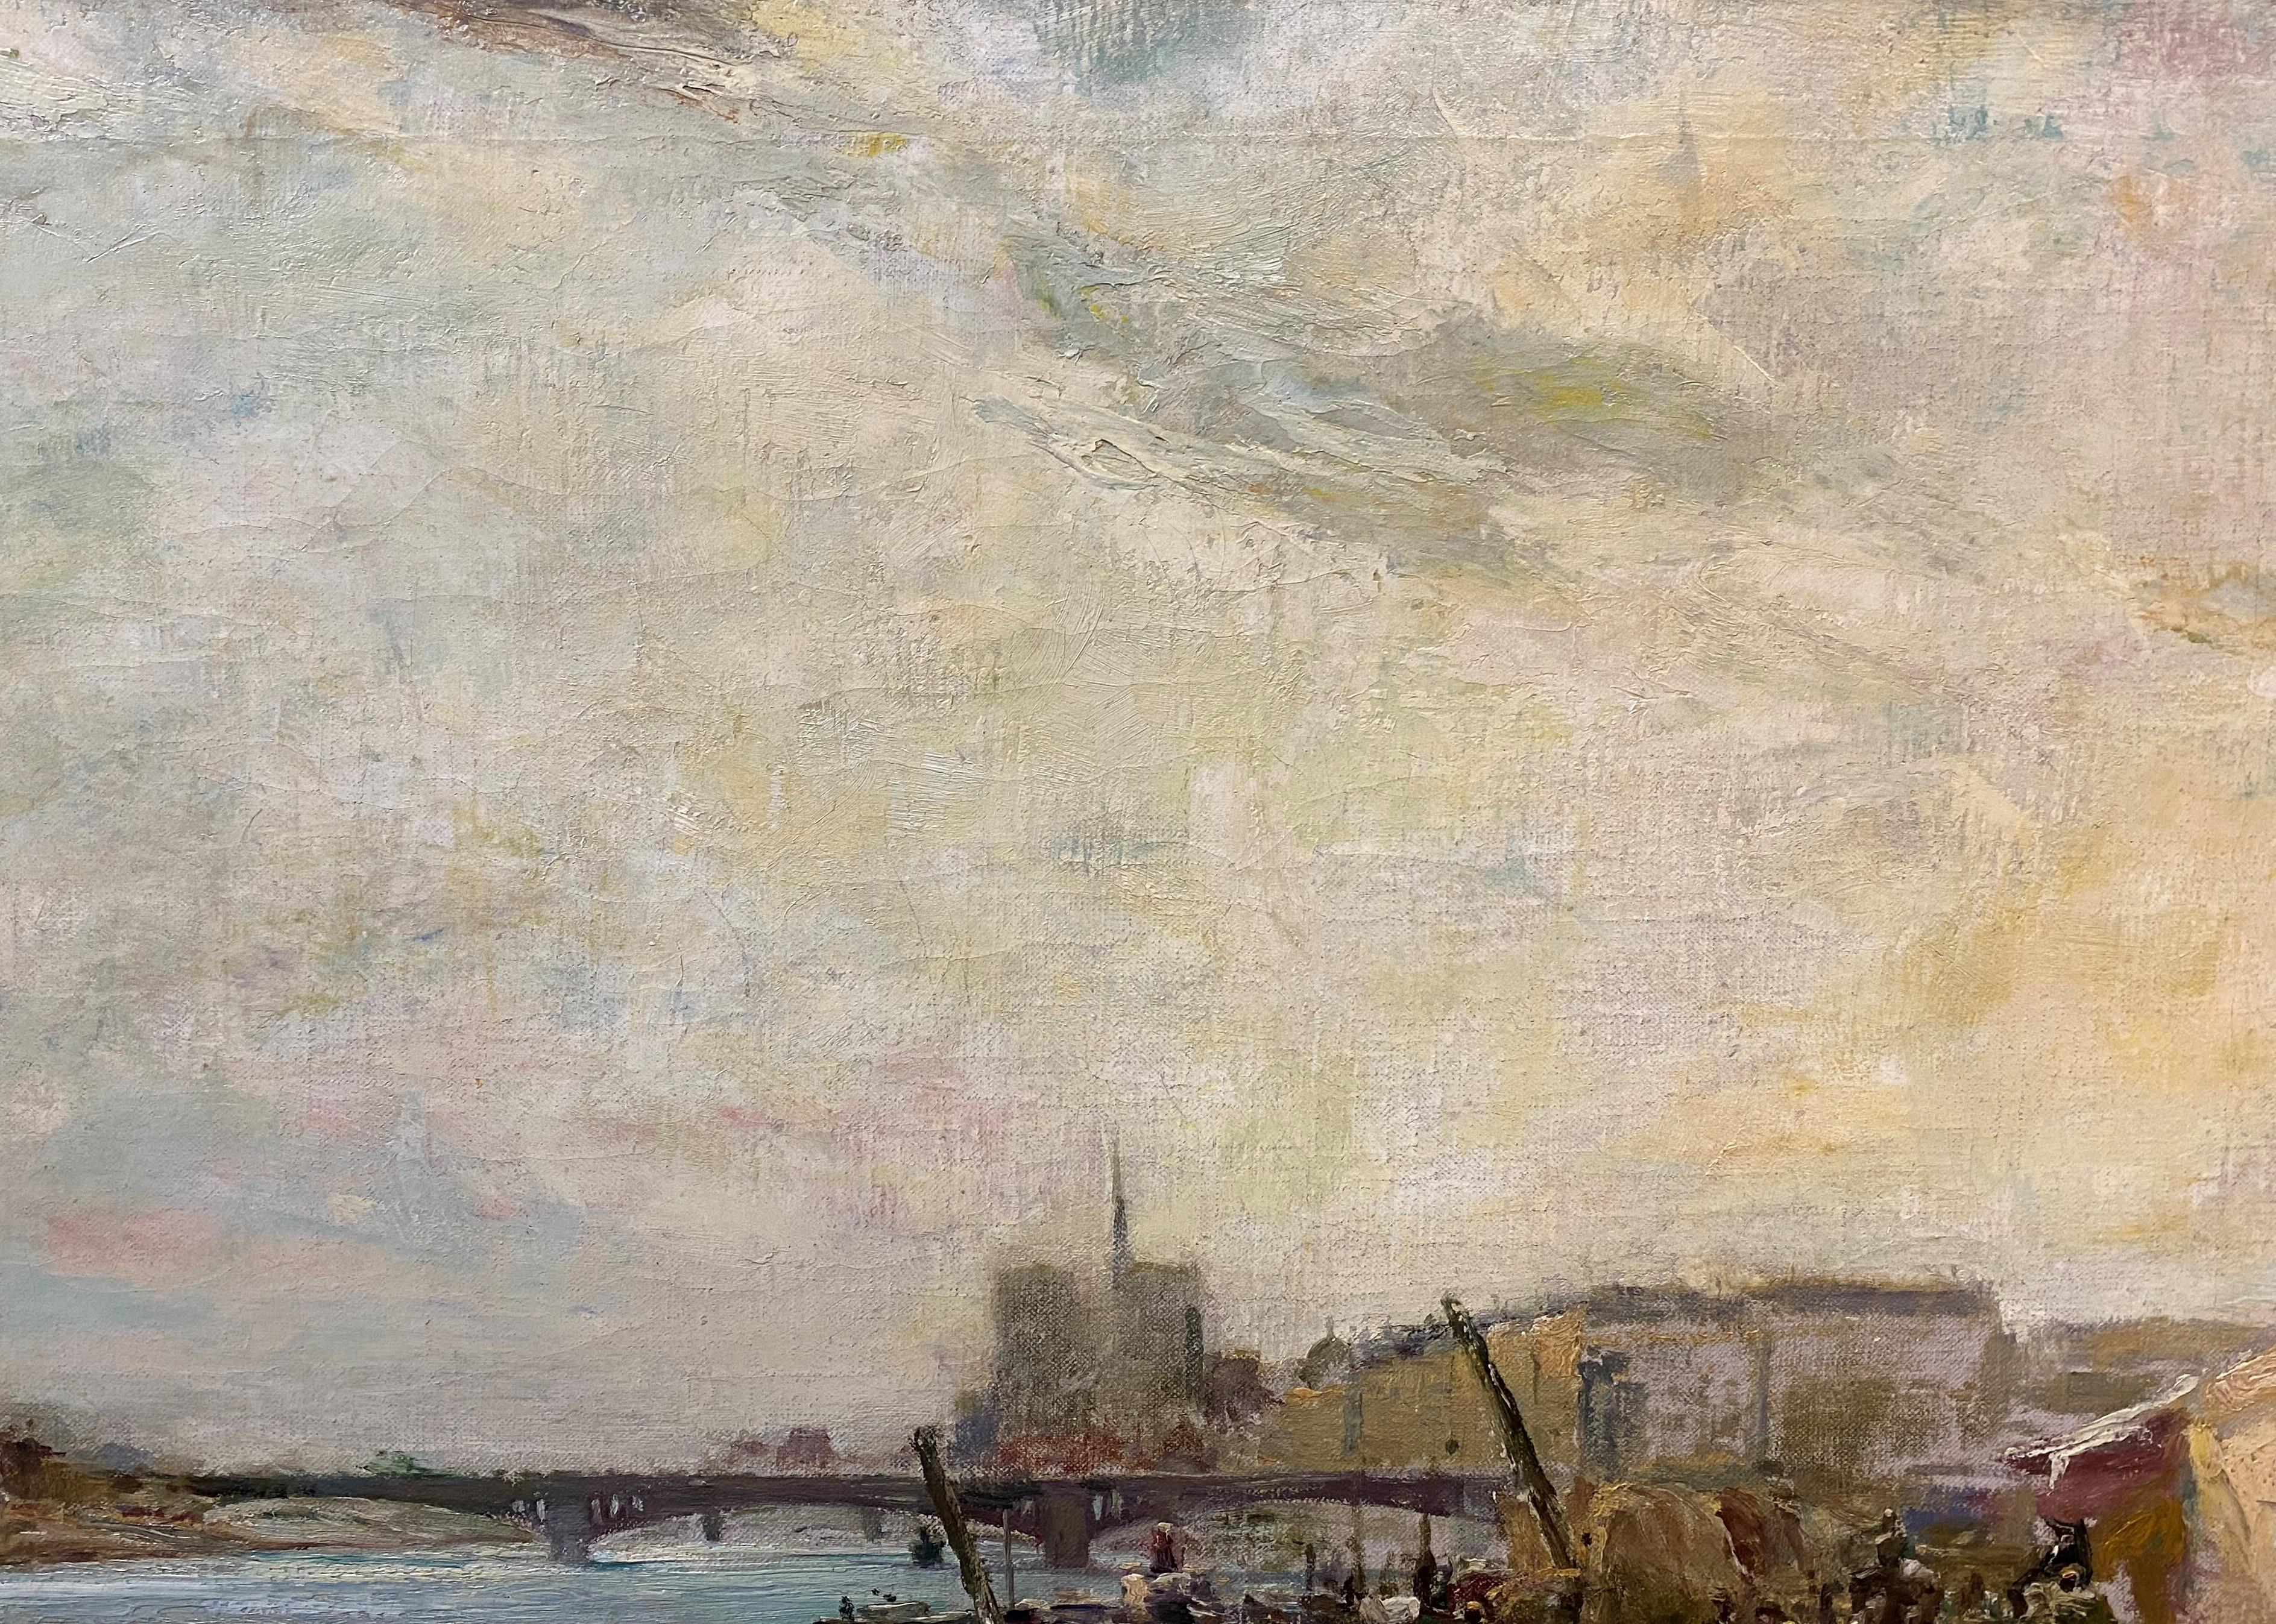 Eine schöne impressionistische Landschaft entlang der Seine in Frankreich von dem amerikanischen Künstler Chauncey Foster Ryder (1868-1949). Ryder wuchs in New Haven, Connecticut, auf, studierte in Chicago und Paris und ließ sich schließlich in New